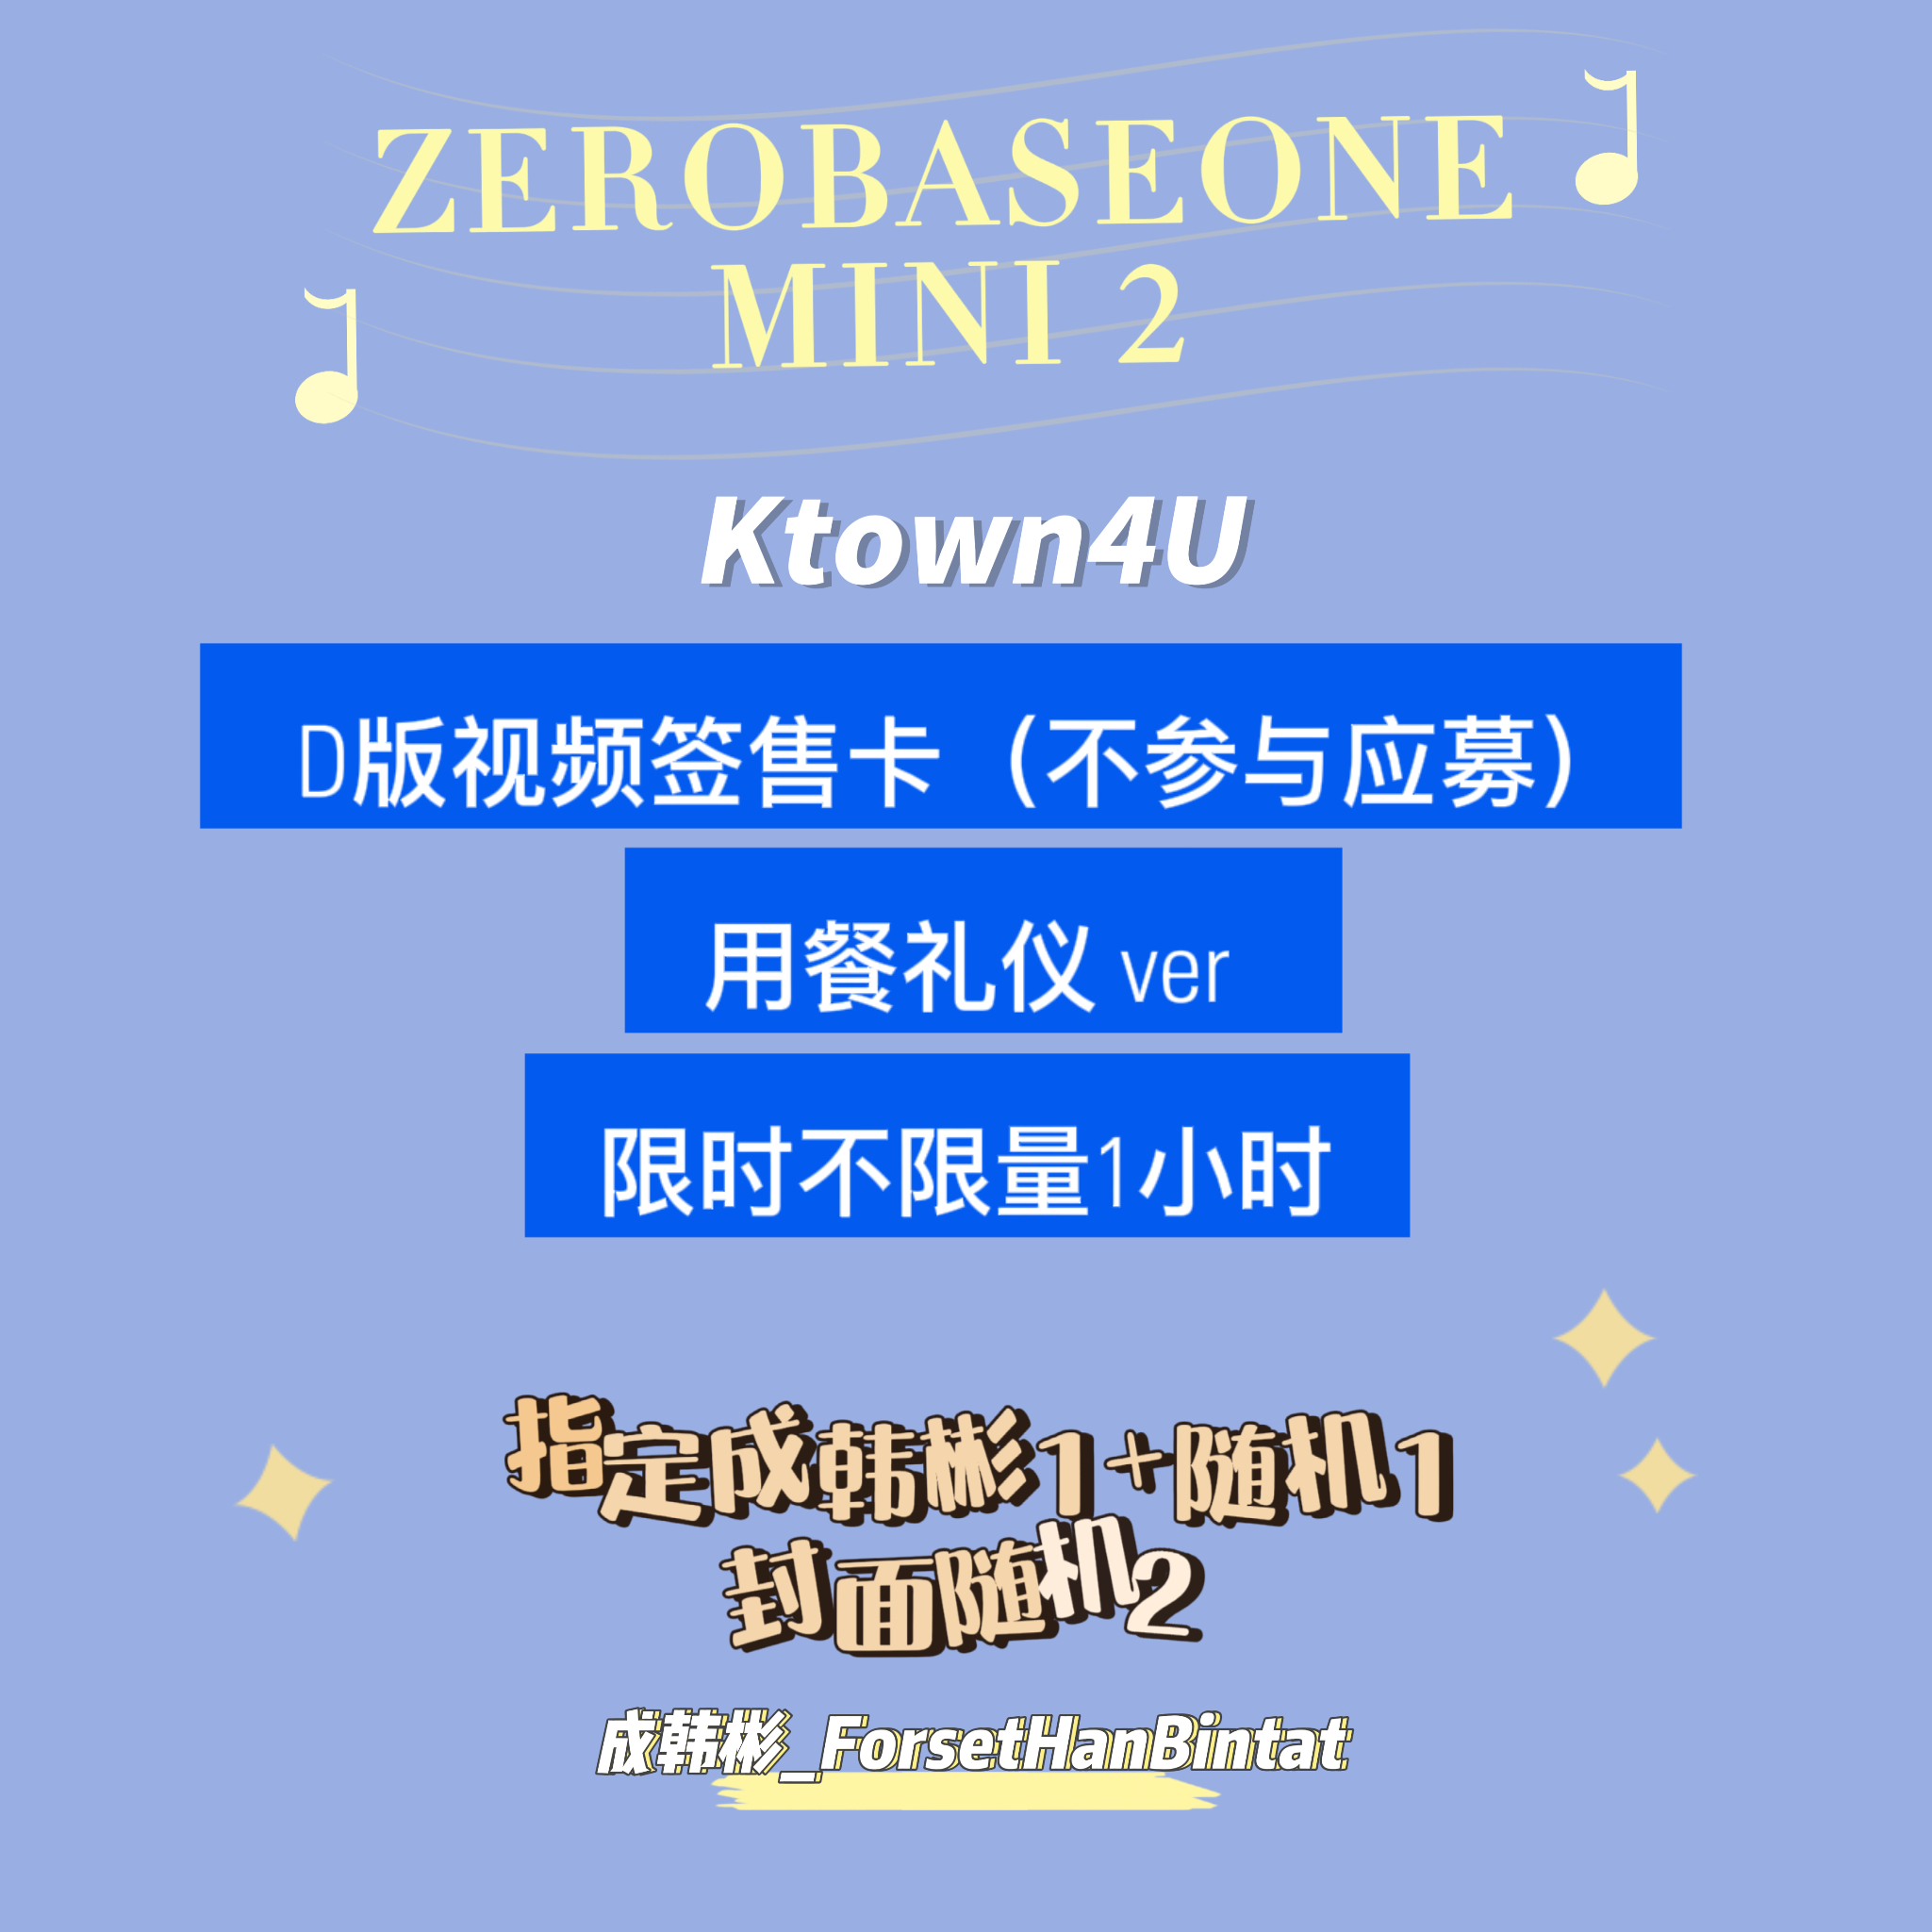 [全款 裸专] [2CD] ZEROBASEONE - The 2nd Mini Album [MELTING POINT] (DIGIPACK ver.) (Random Ver.)_成韩彬_ForestHanBintat